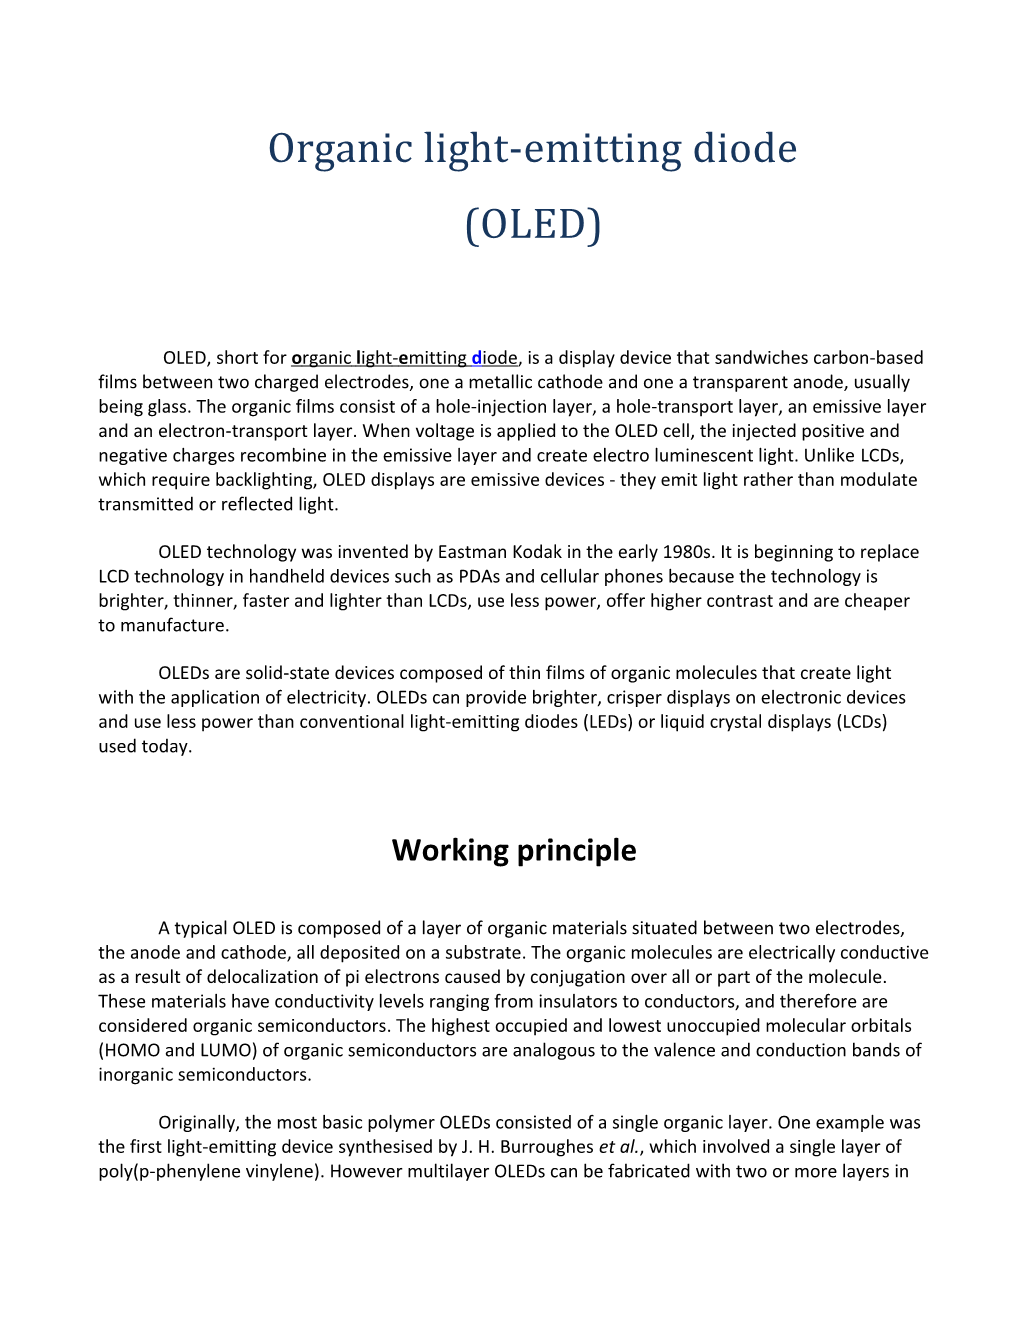 Organic Light-Emitting Diode